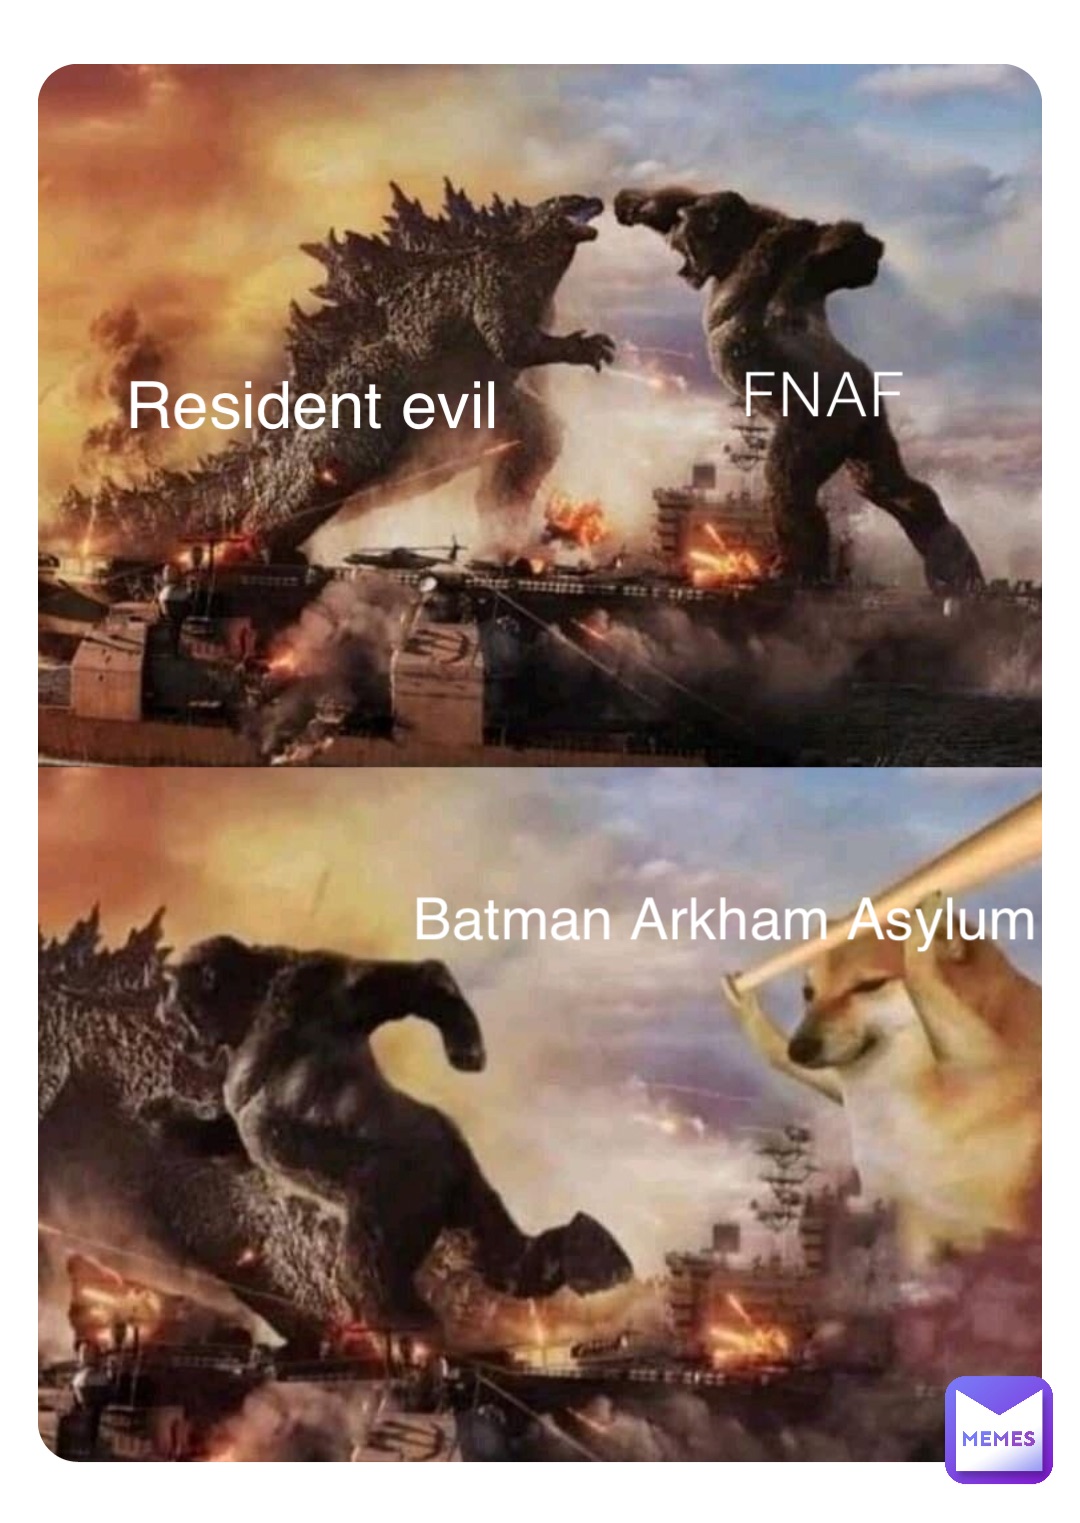 FNAF Batman Arkham Asylum Resident evil